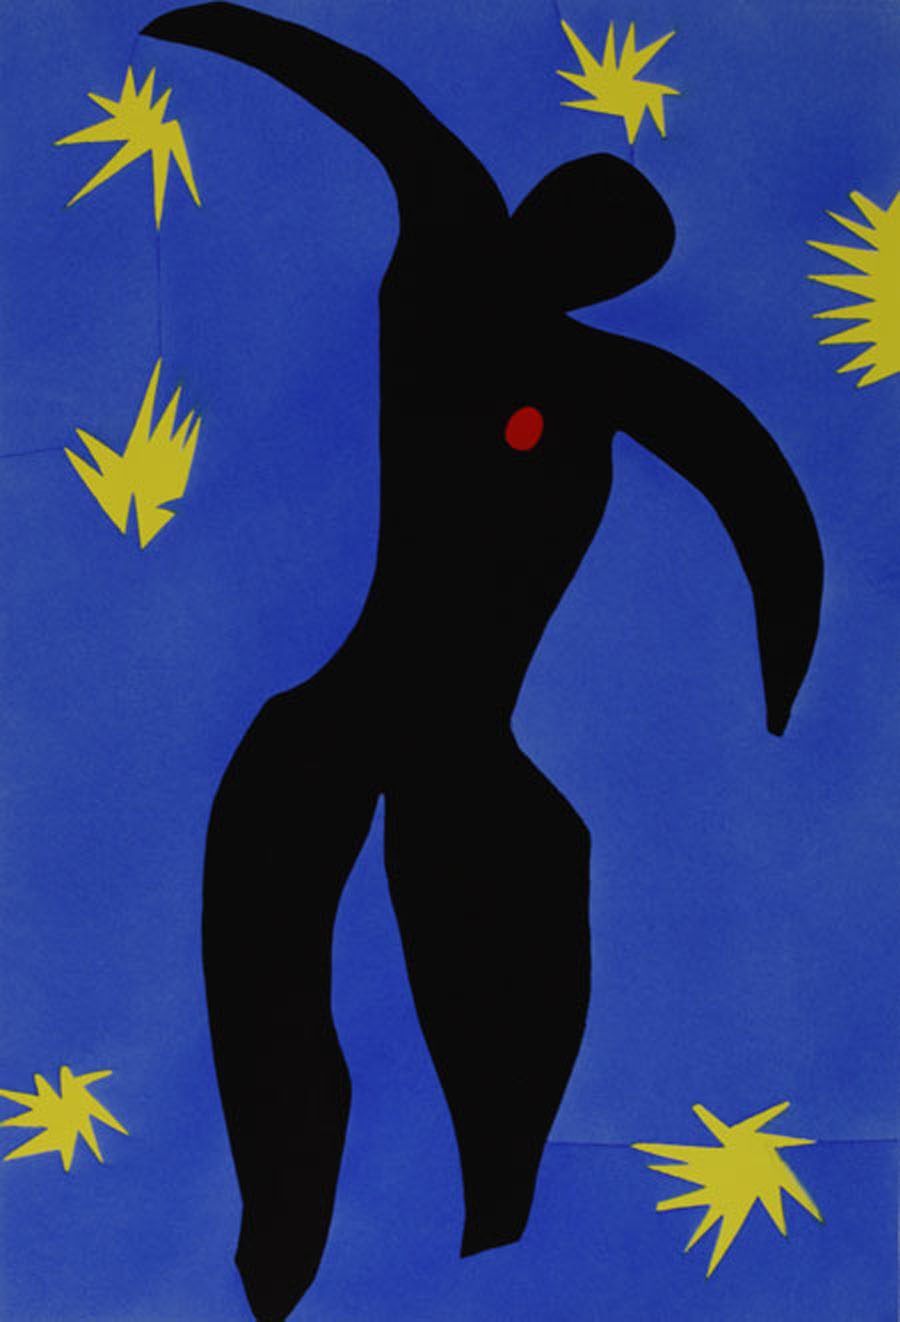 Henri Matisse icaro